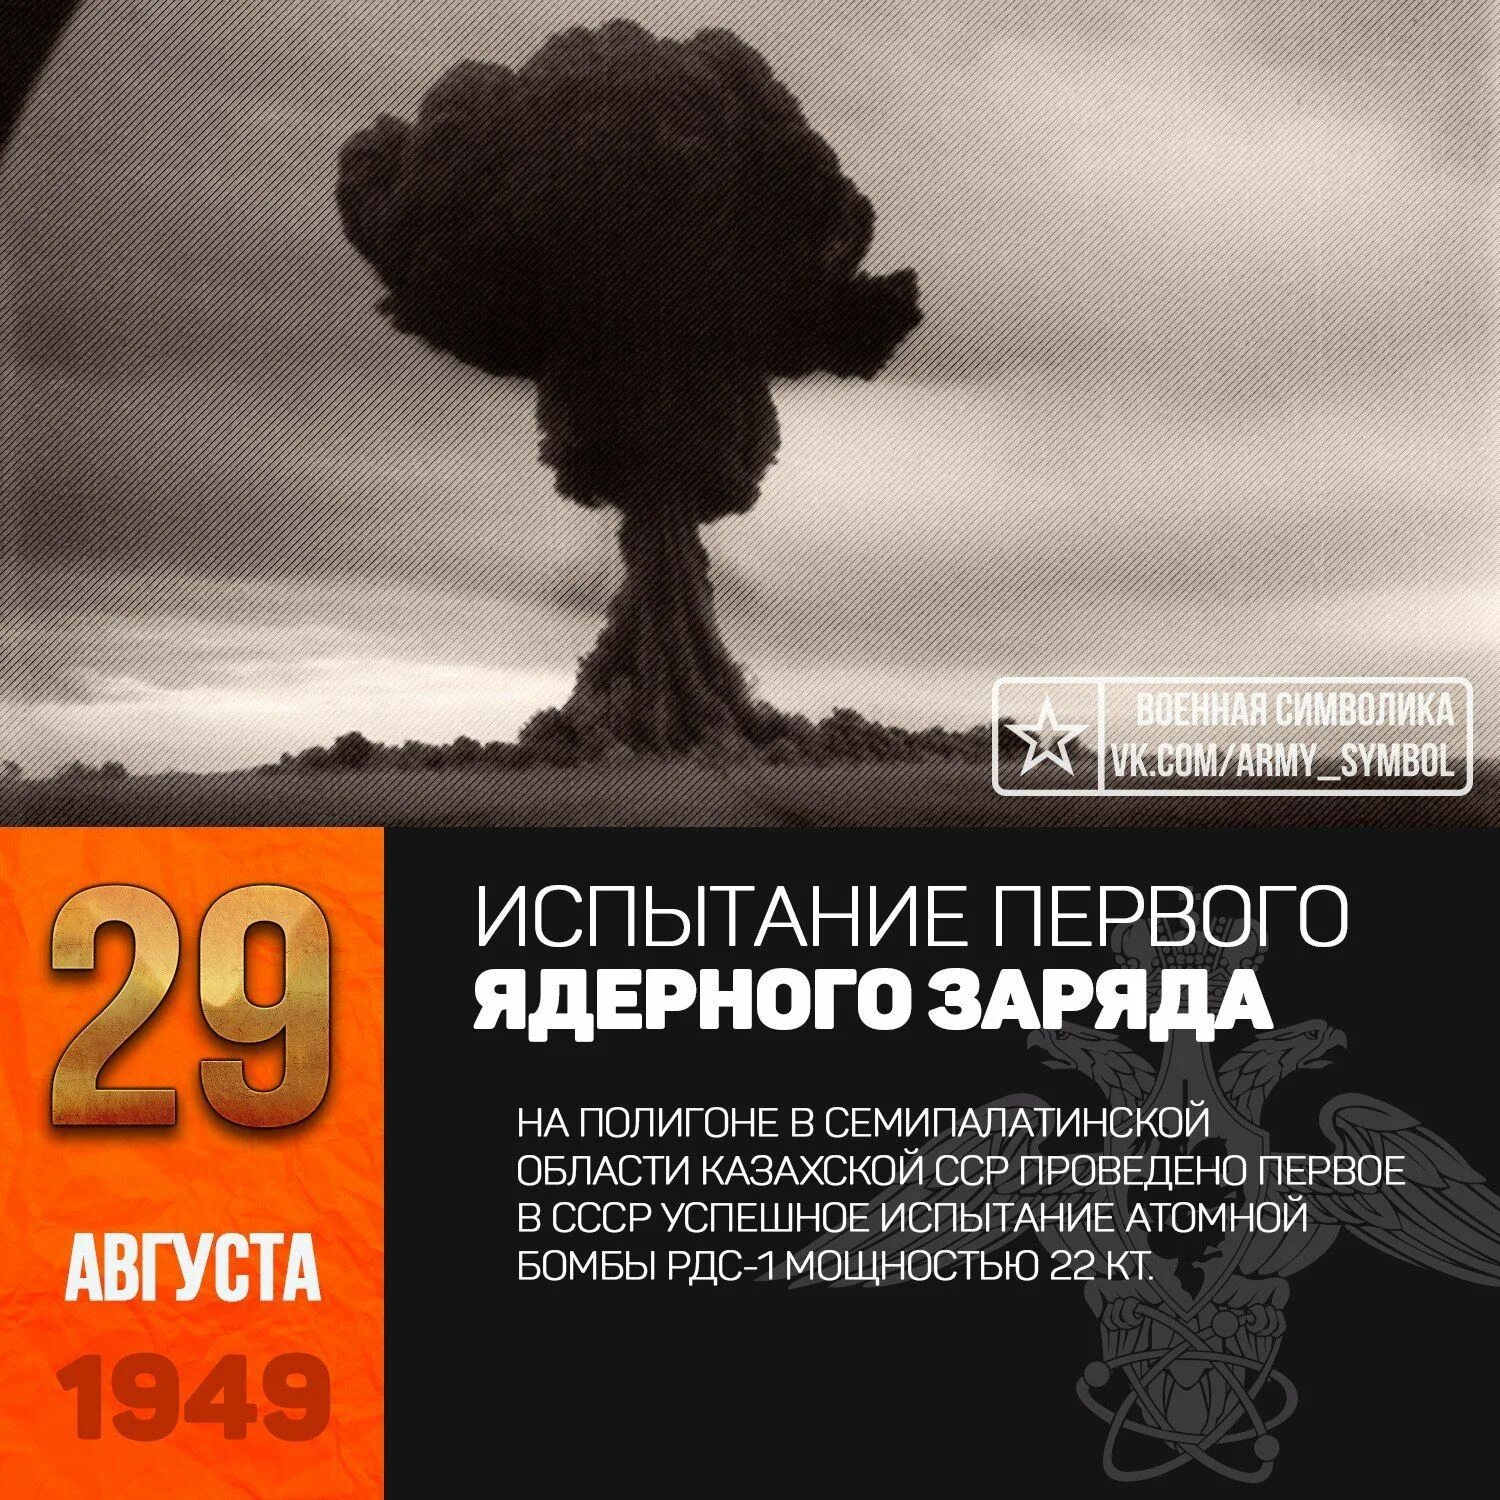 Испытание первой атомной. 29 Августа 1949 испытание атомной бомбы в СССР. 29 Августа 1949 г испытание первой атомной бомбы в СССР РДС-1. 29 Августа 1949 года на Семипалатинском полигоне испытали РДС-1. Первая Советская атомная бомба РДС-1 взрыв.